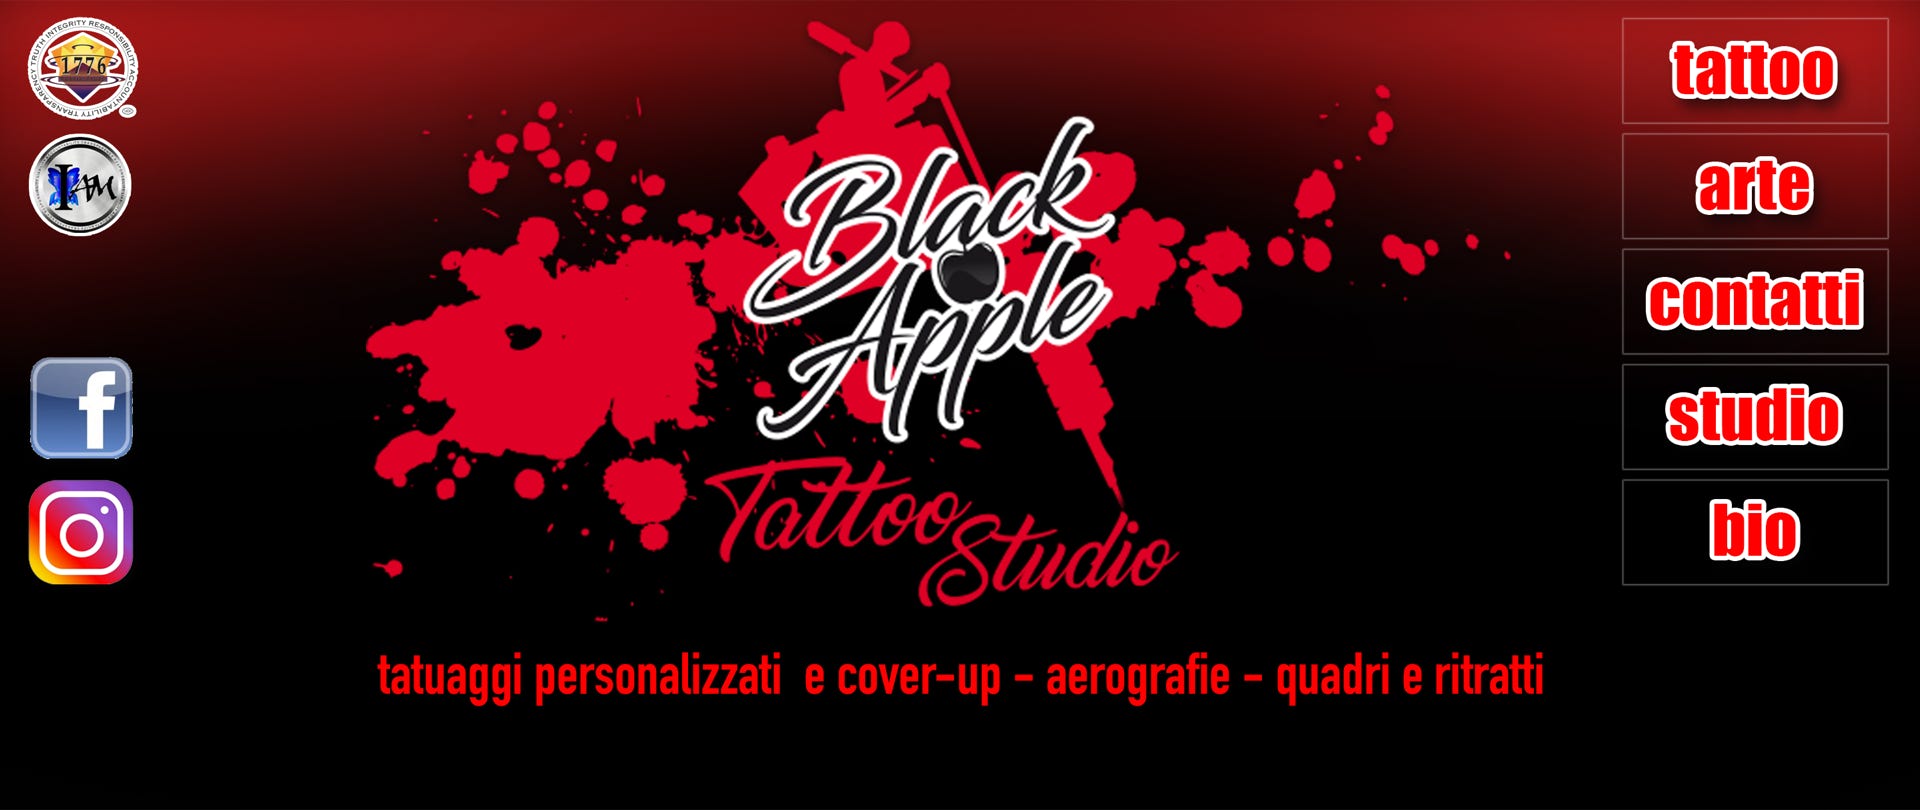 Black Apple studio tatuaggi - Aerografie - Quadri - Decorazioni personalizzate